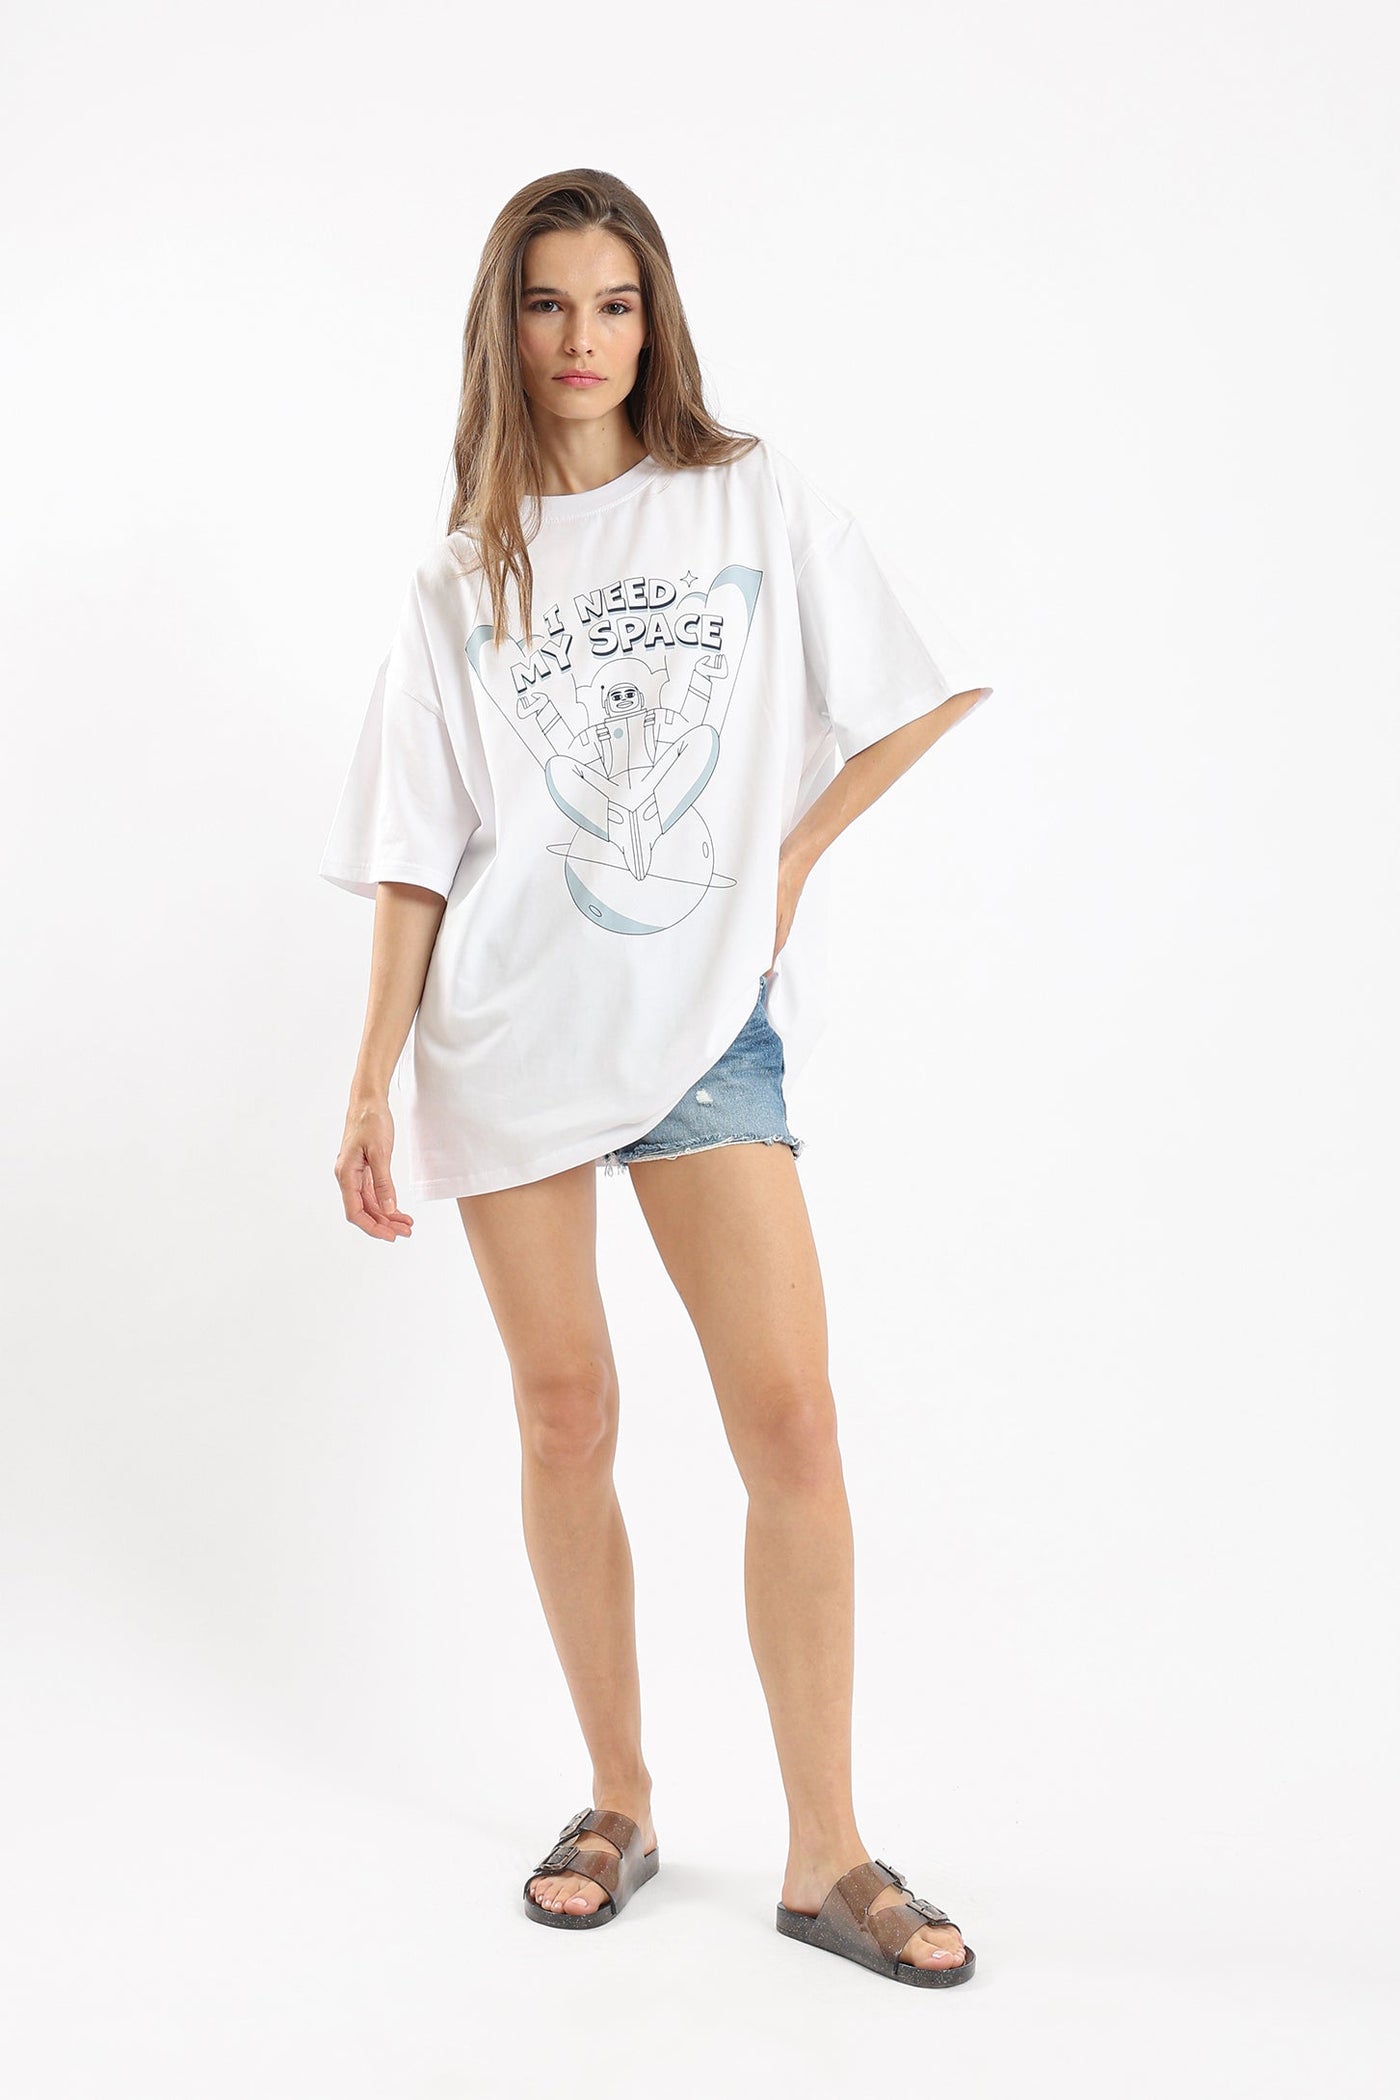 Unisex T-Shirt - Oversized - "I Need My Space" Print